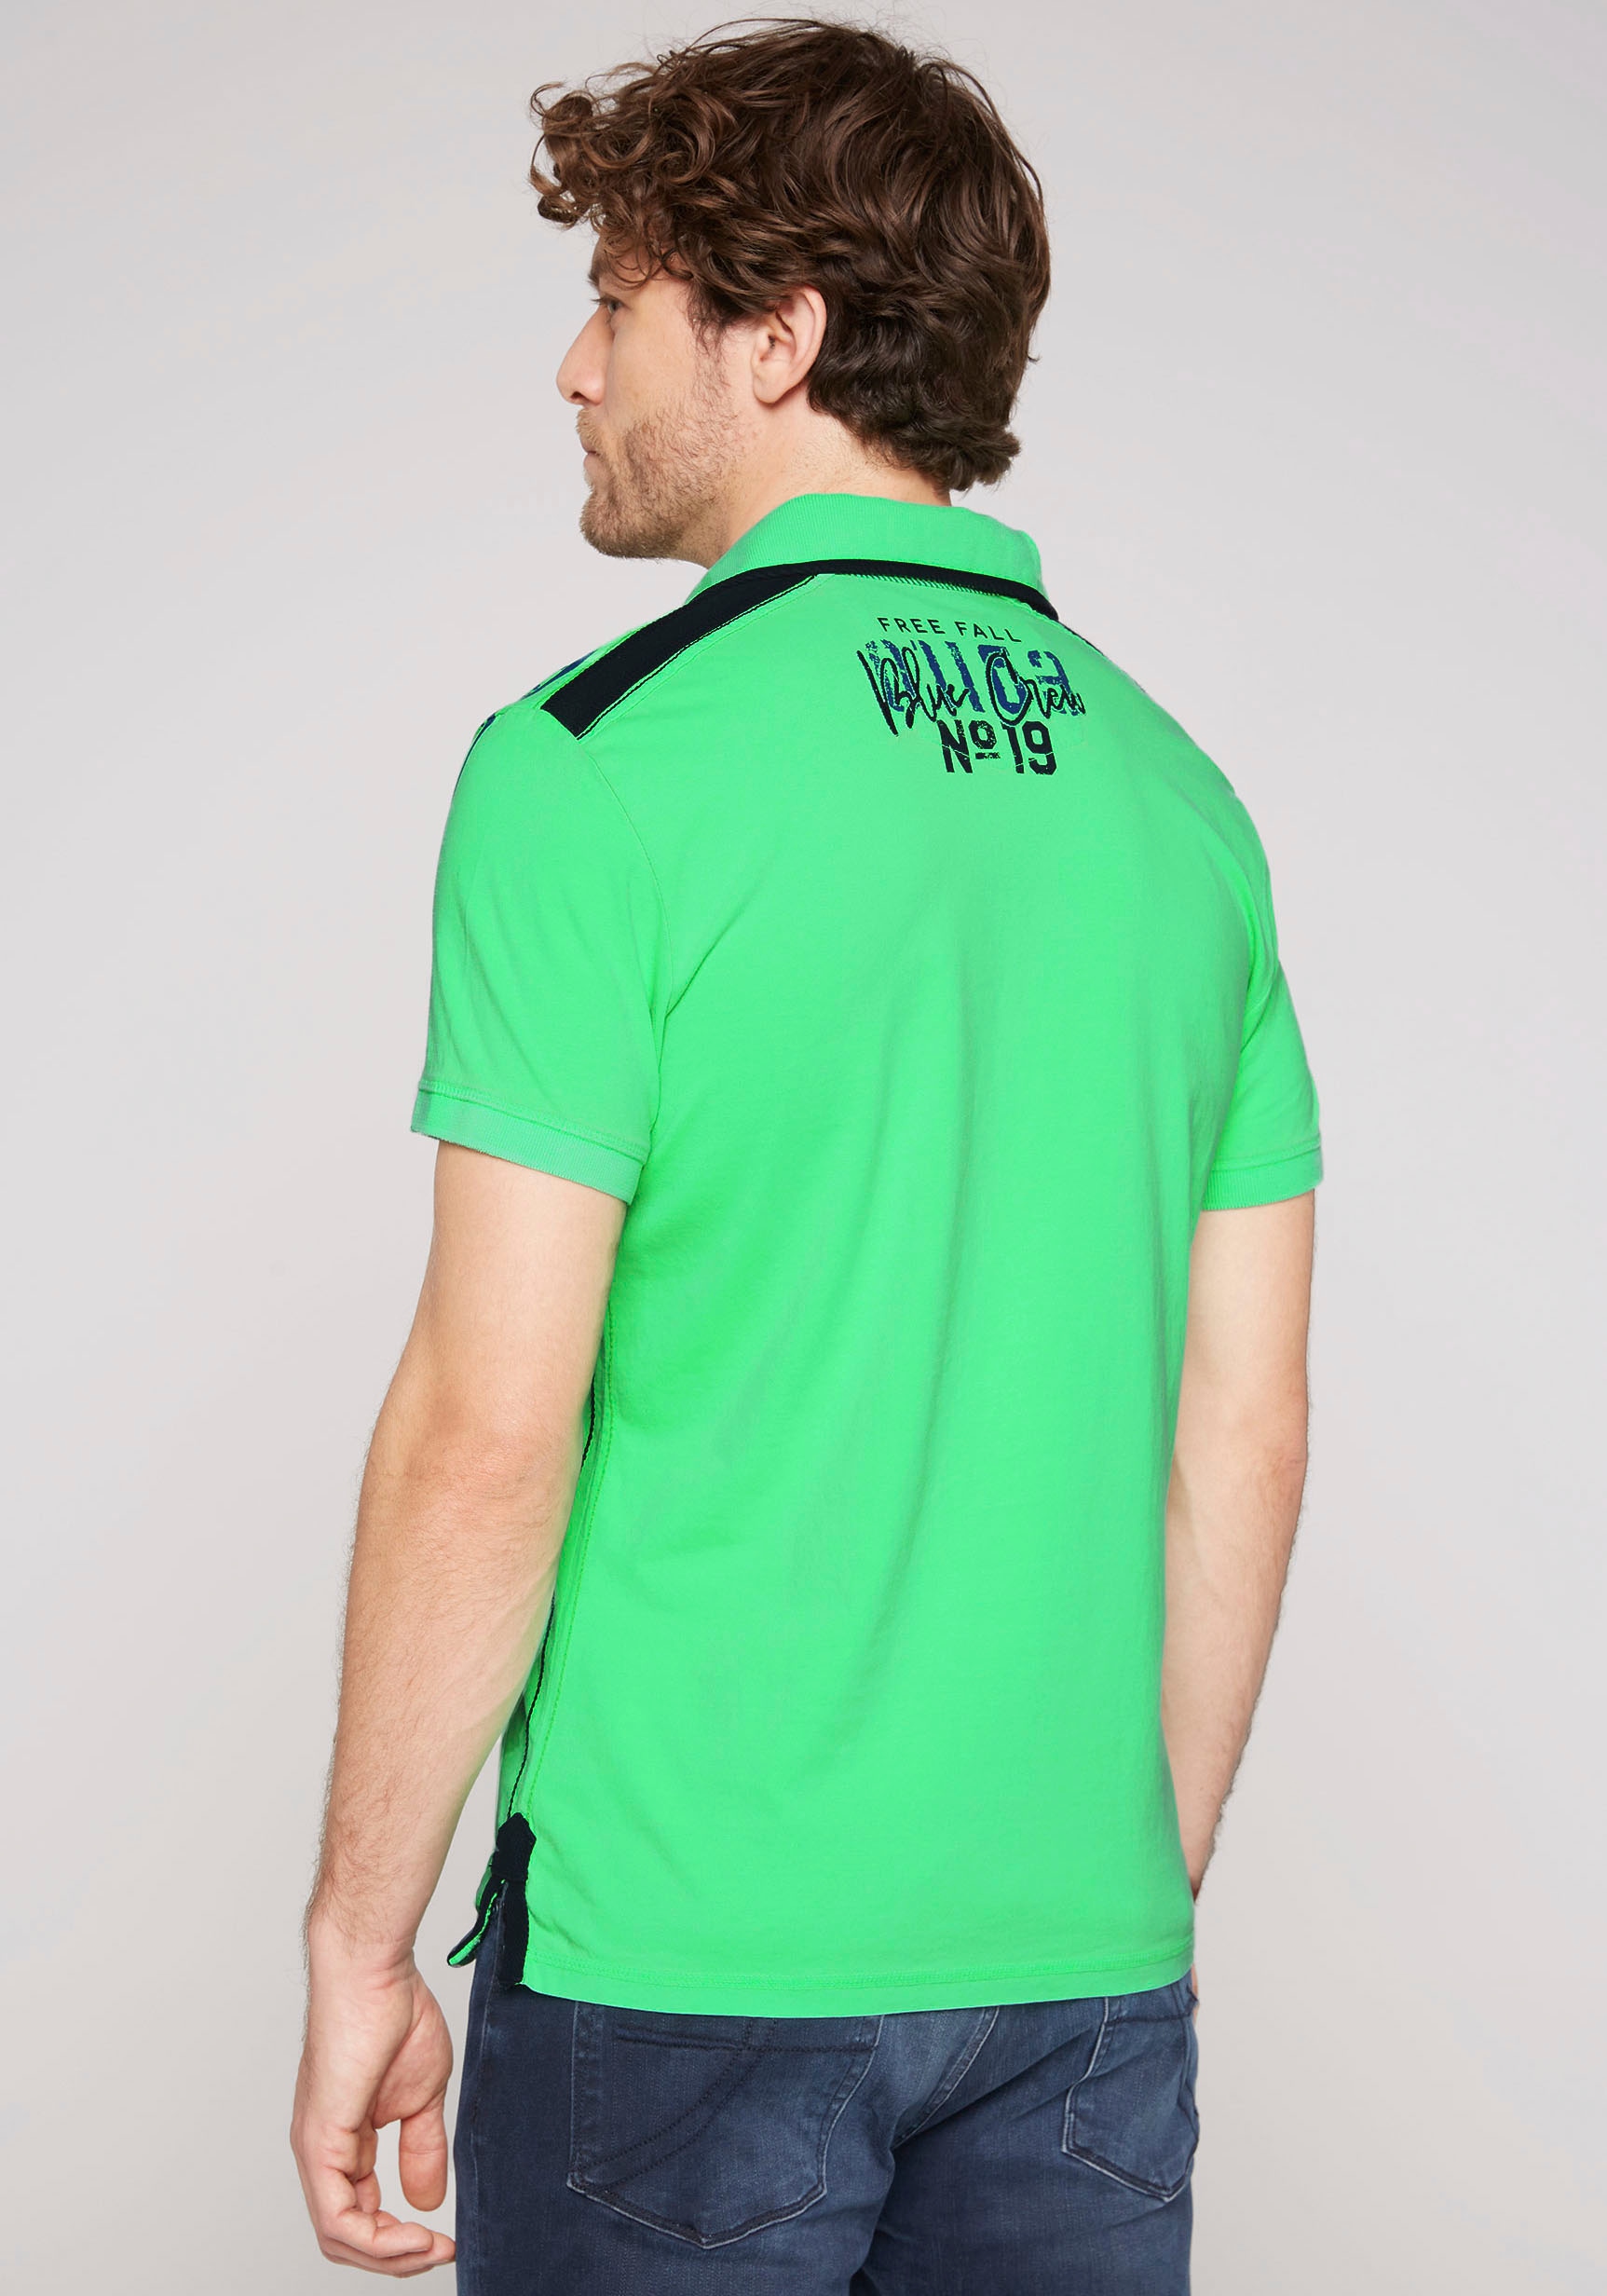 CAMP DAVID Poloshirt, mit Tapes auf den Schultern online bestellen |  Jelmoli-Versand